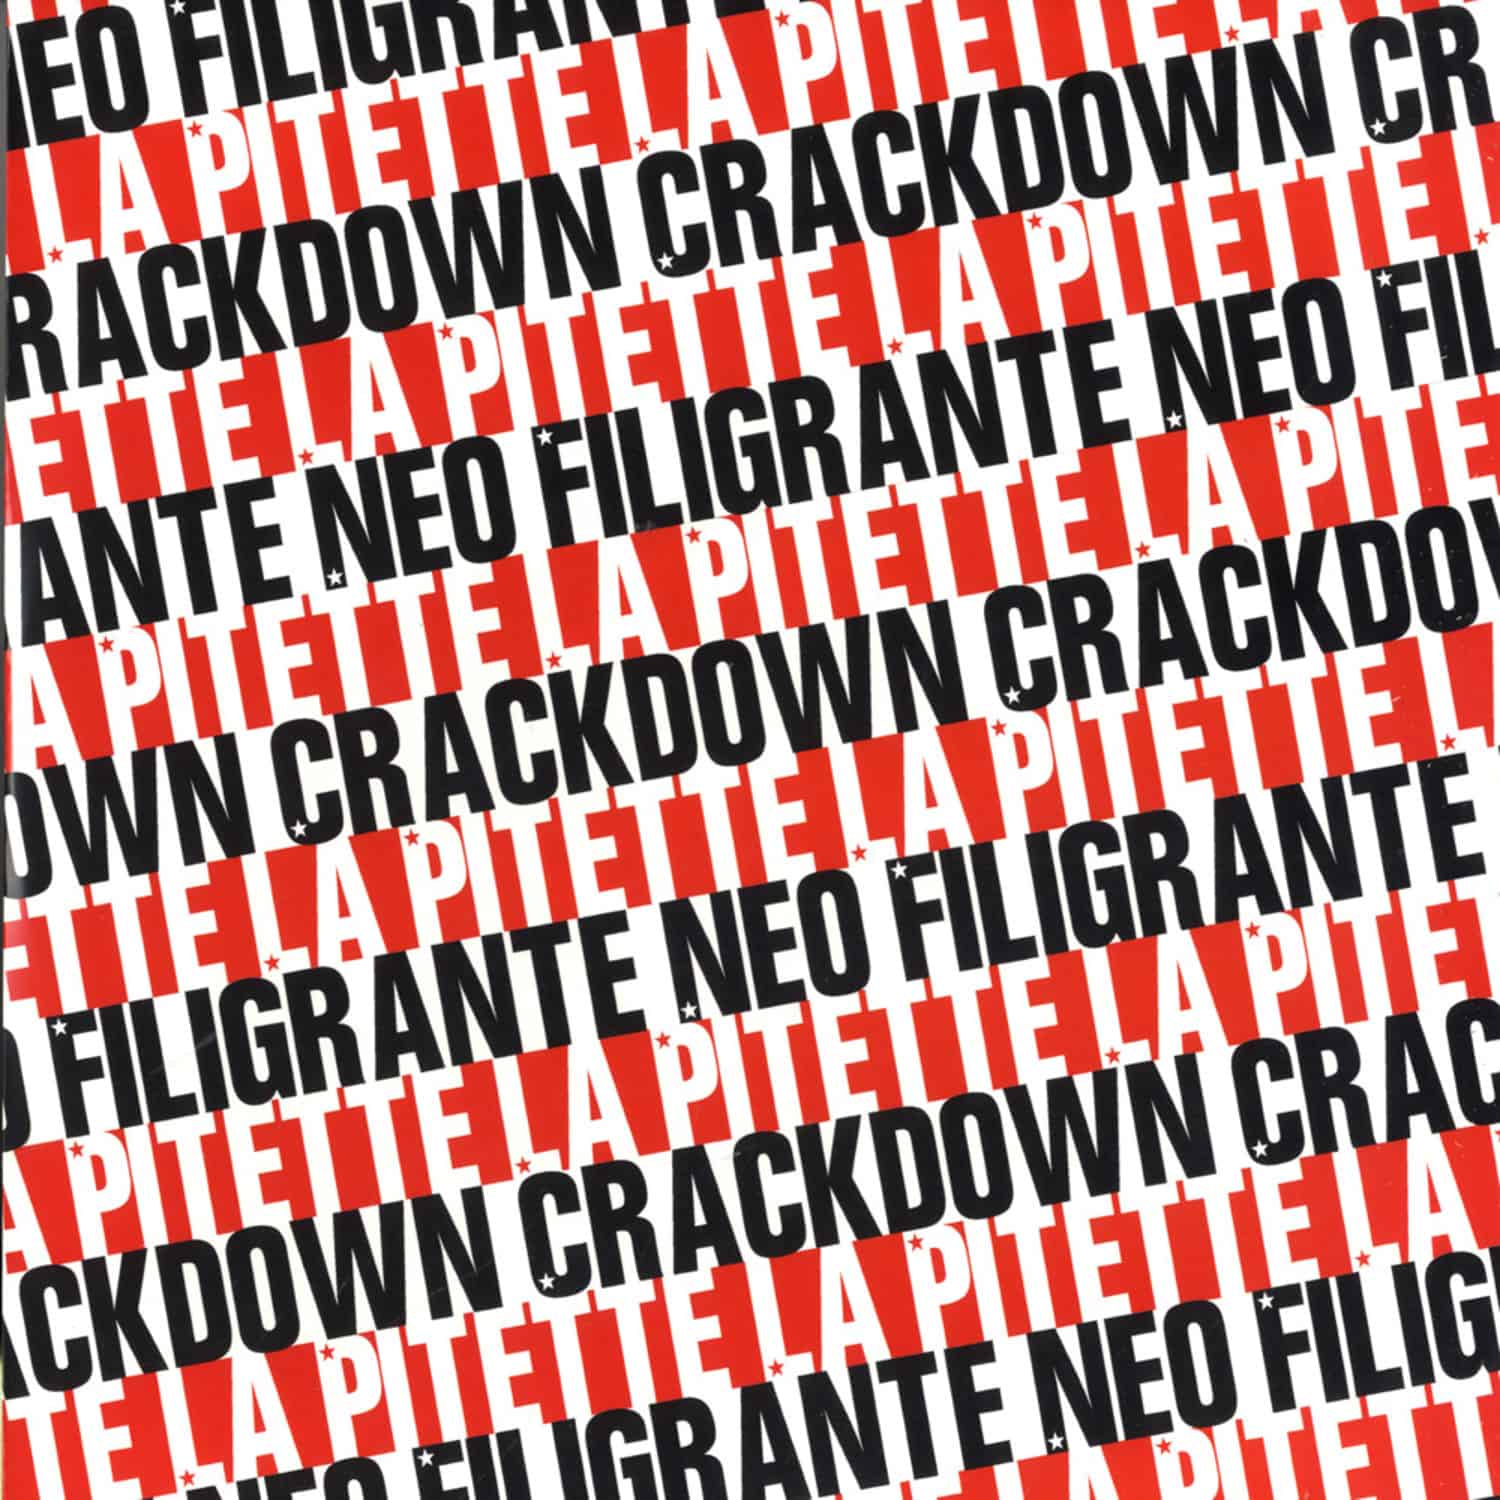 Neo Filigrante & Crackdown - LA PITETTE / CIRCUS WAX